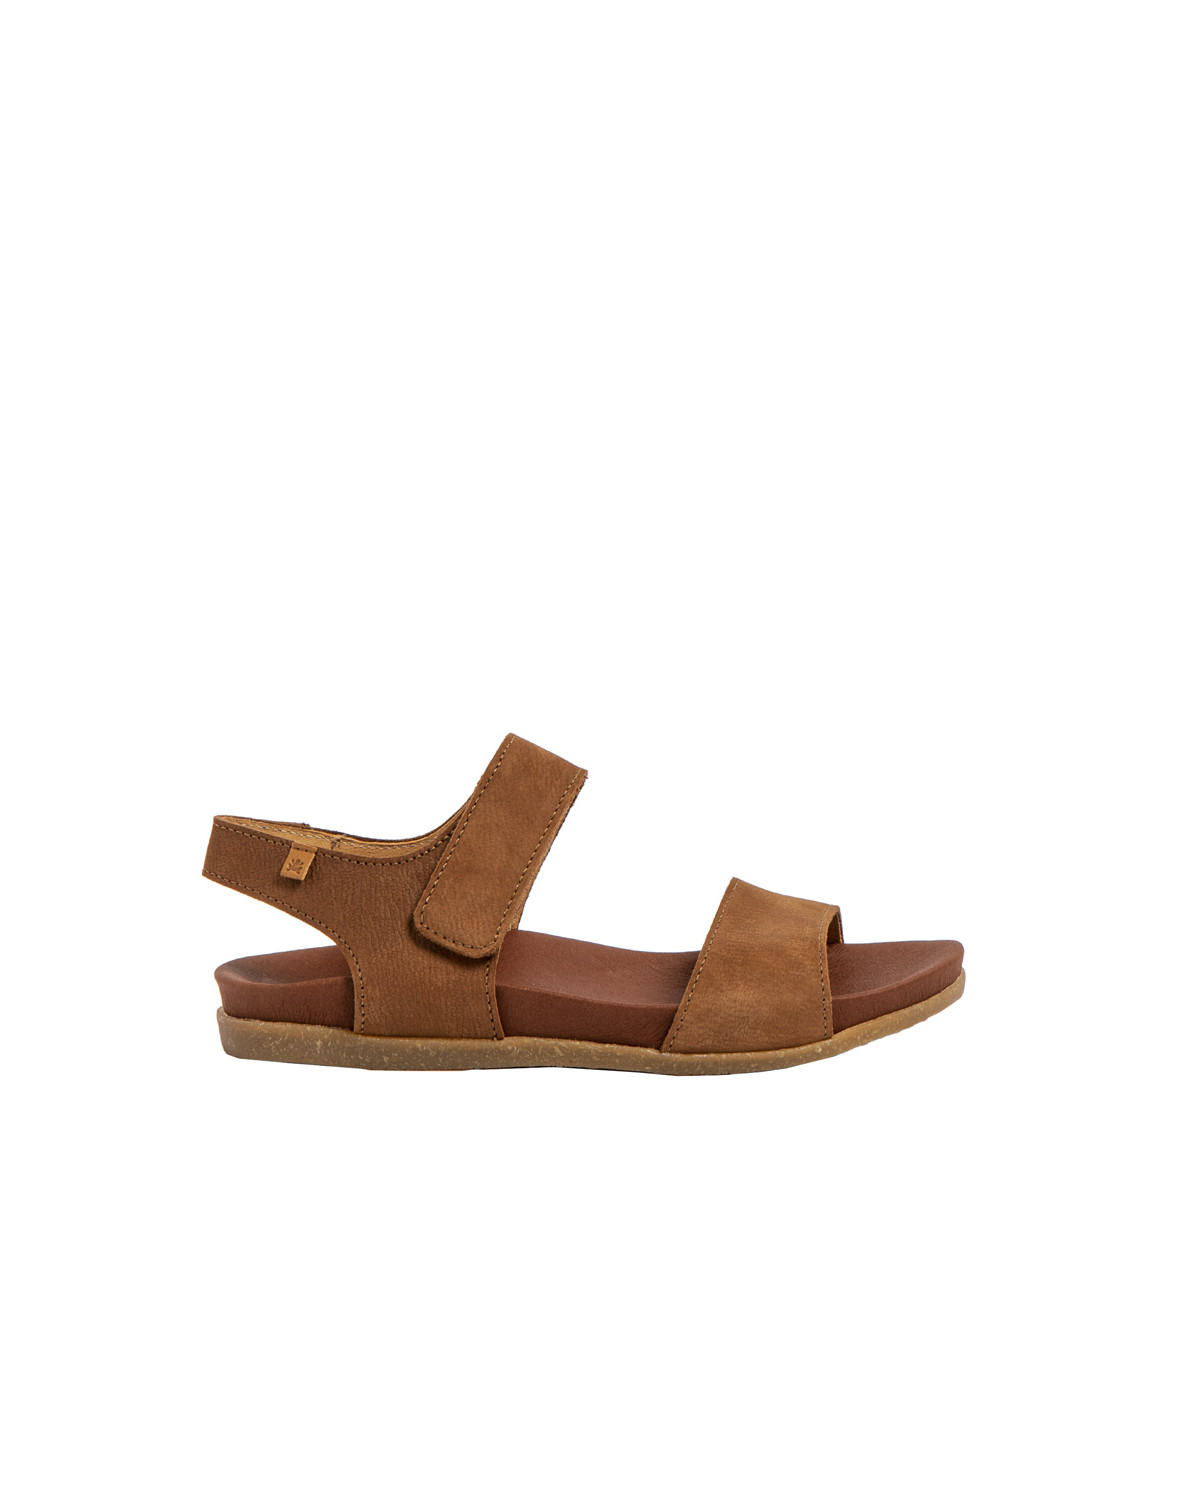 Sandales confortables plates à velcro en cuir et semelles recyclées - Marron - El naturalista